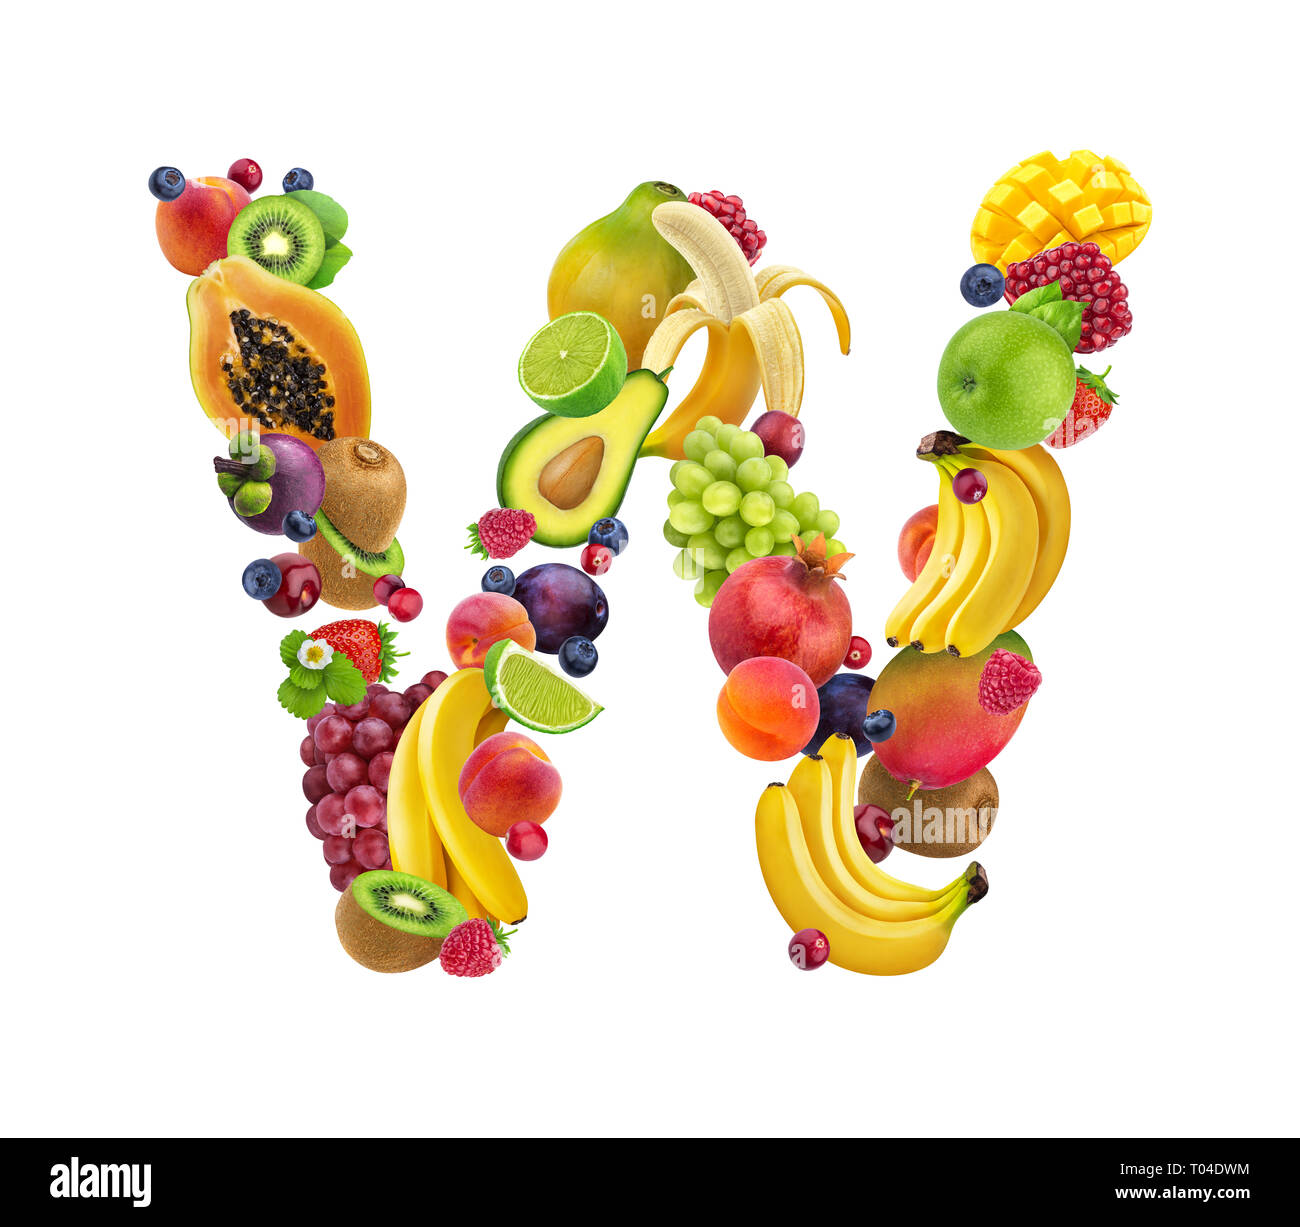 Lettre W faites de différents fruits et de baies, fruits alphabet isolé sur fond blanc Banque D'Images